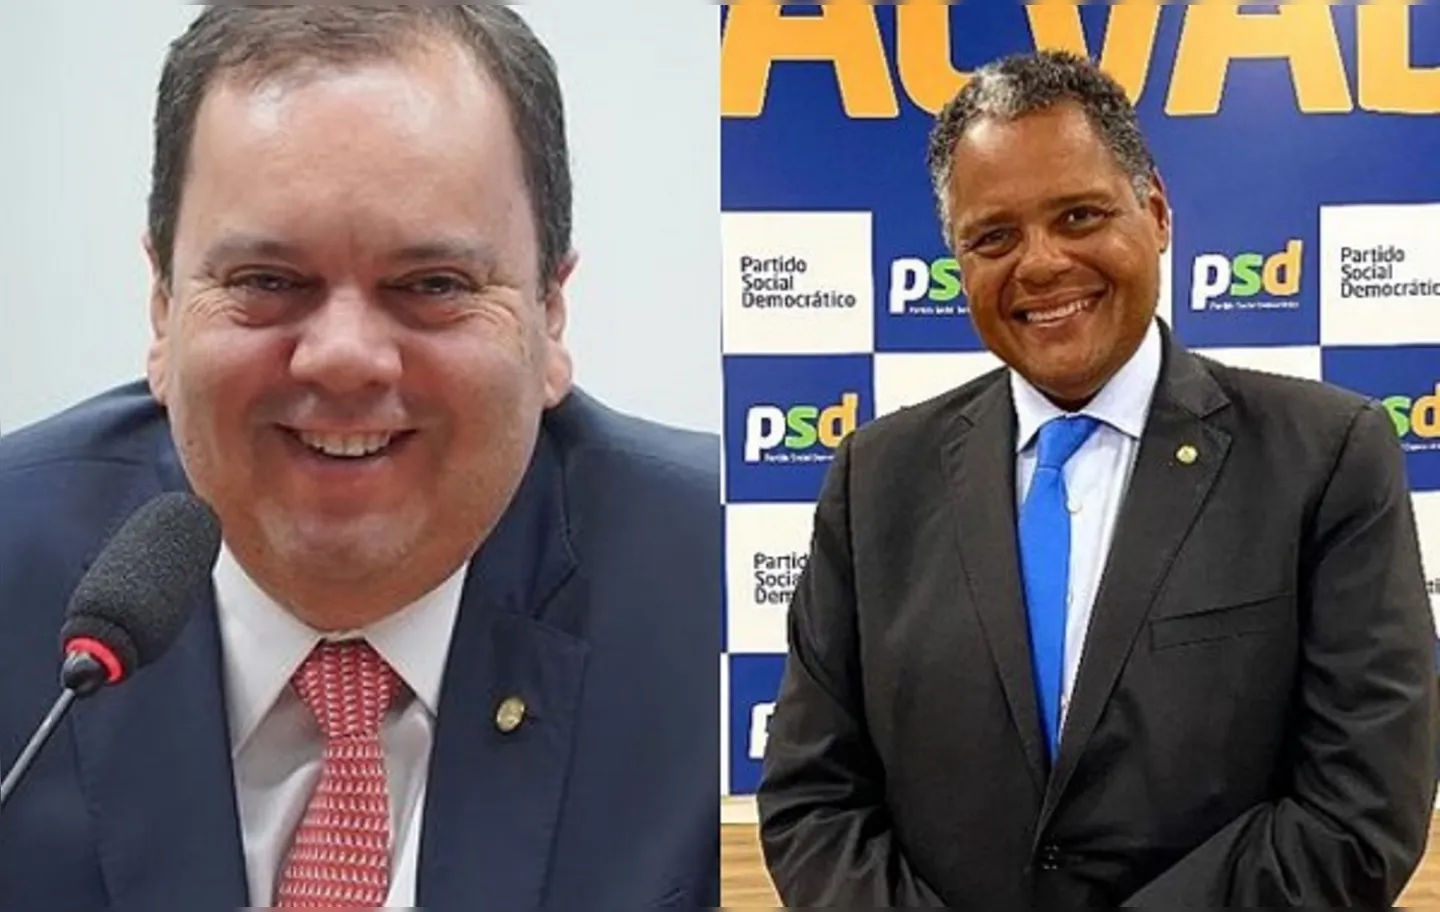 Políticos se encontram novamente no Carnaval do Rio de Janeiro